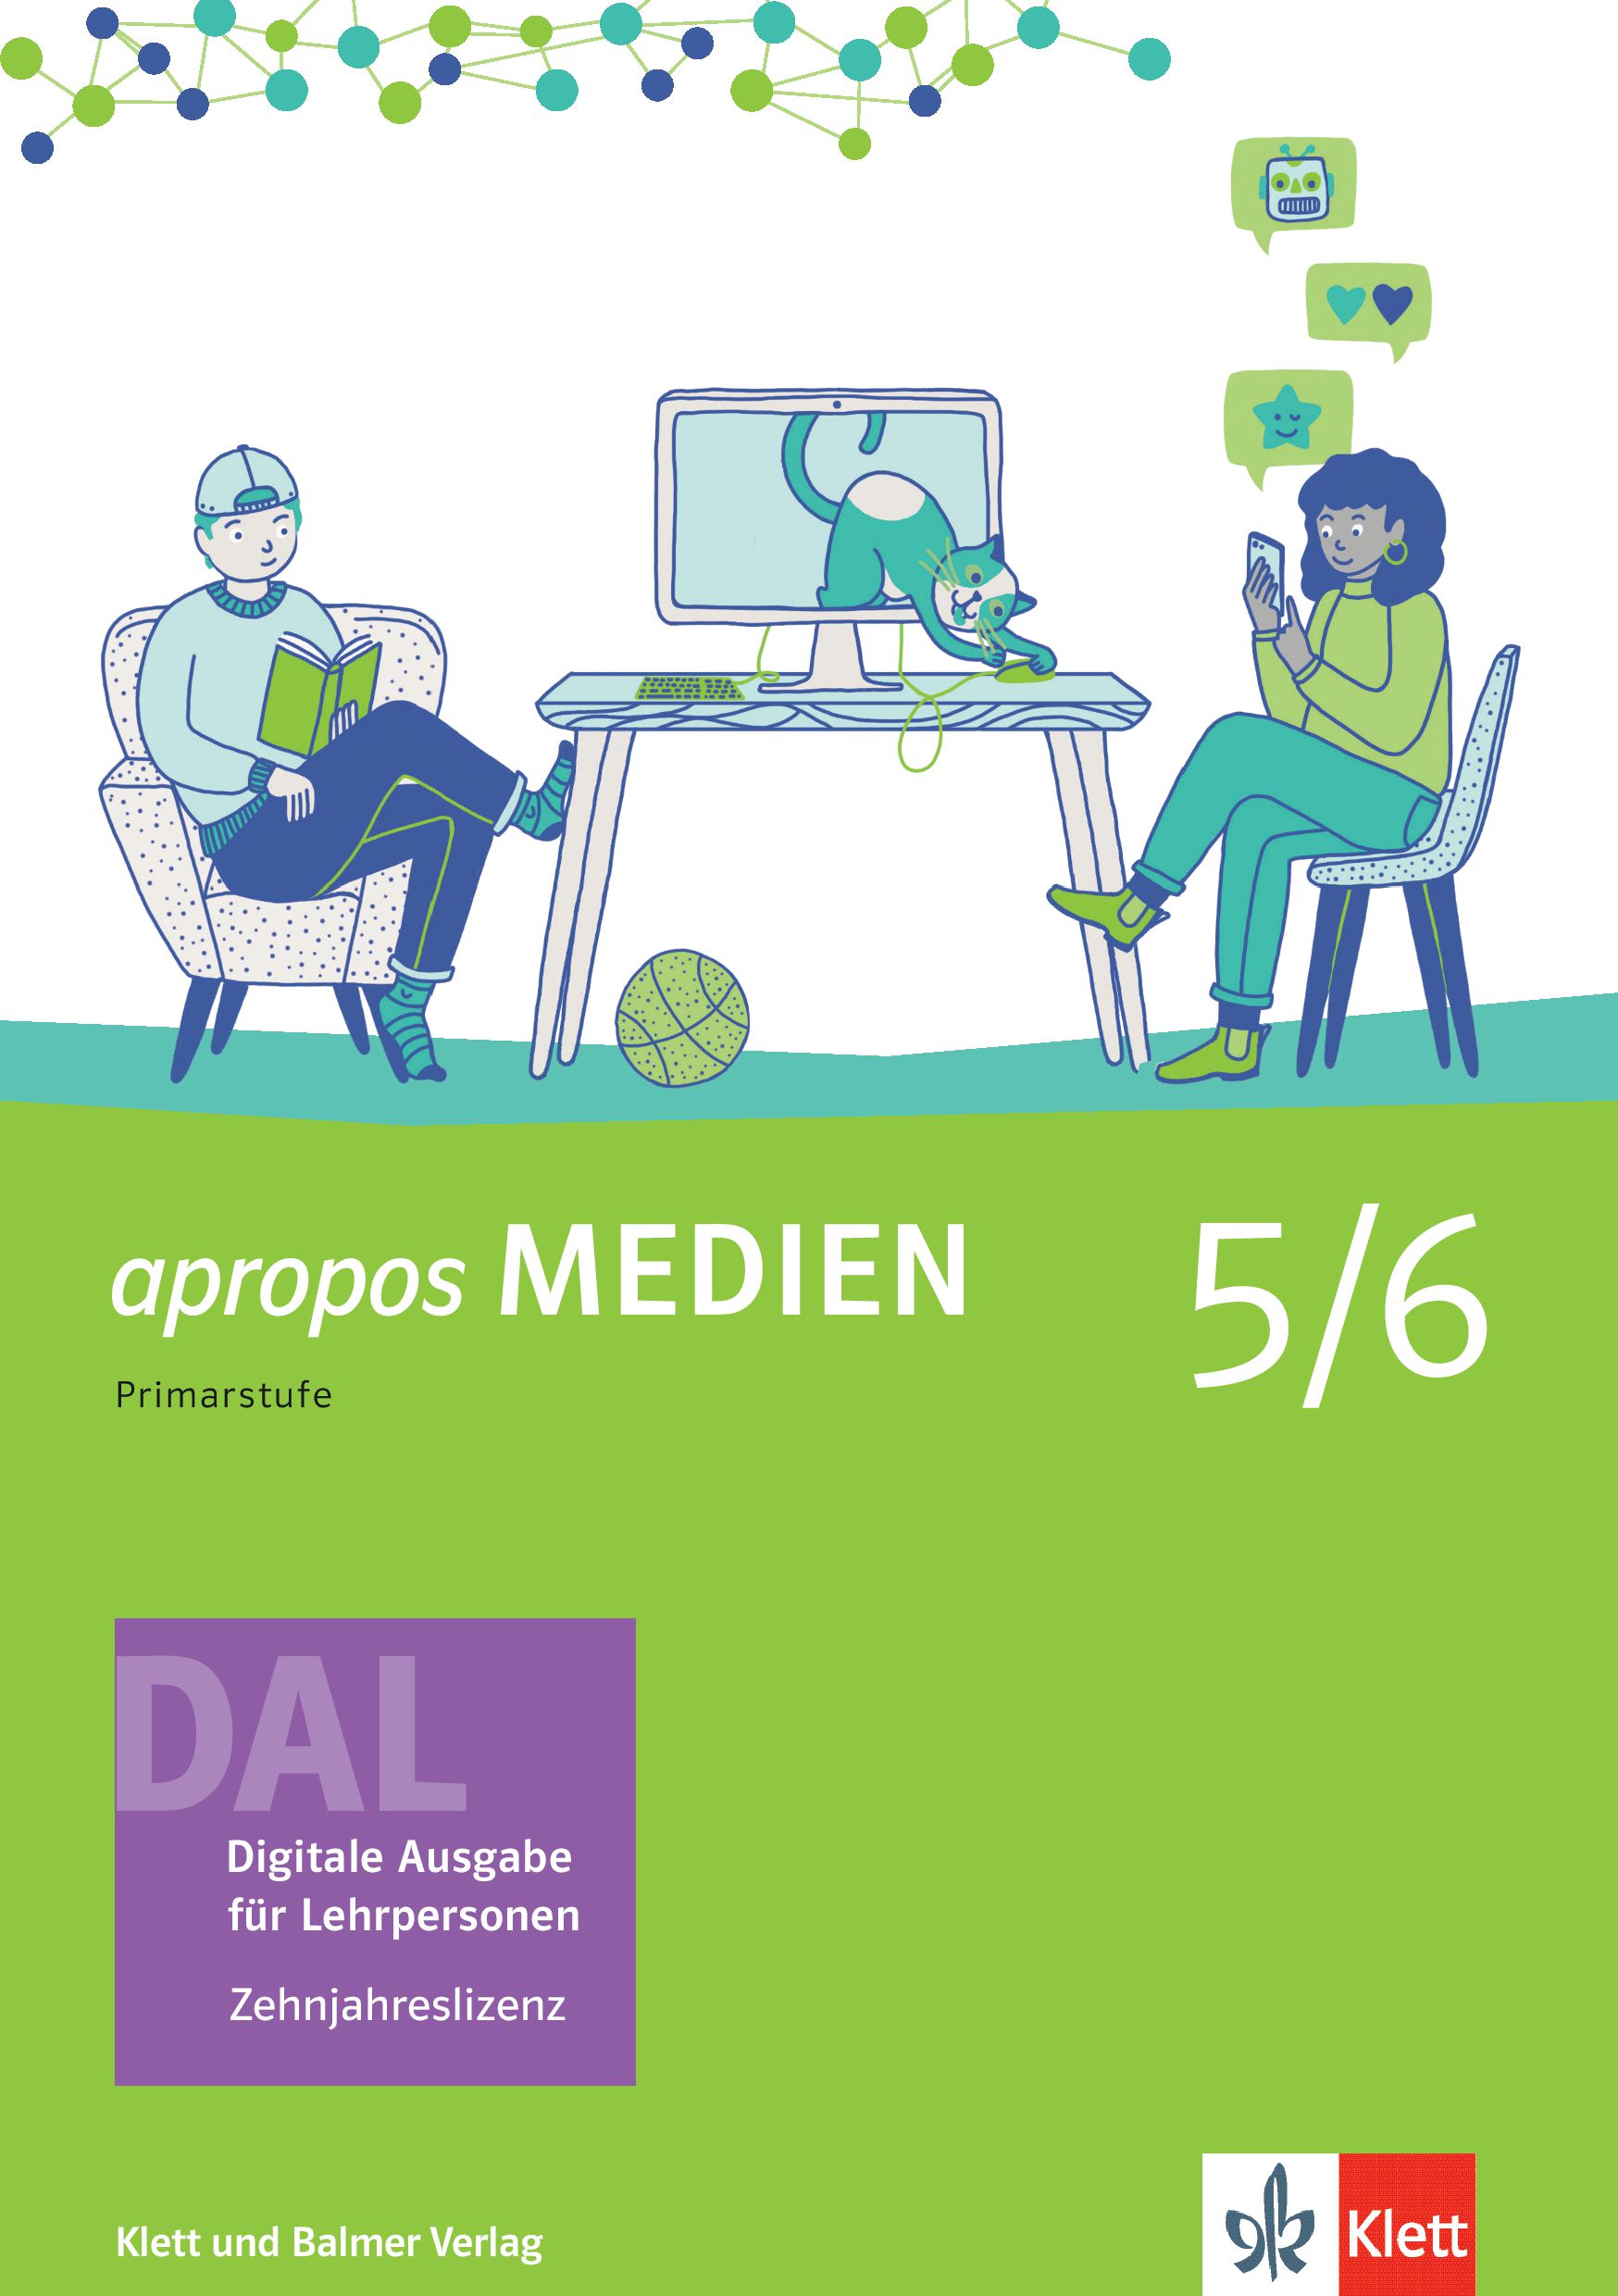 apropos MEDIEN 5/6, DAL - Digitale Aus- gabe für Lehrpersonen